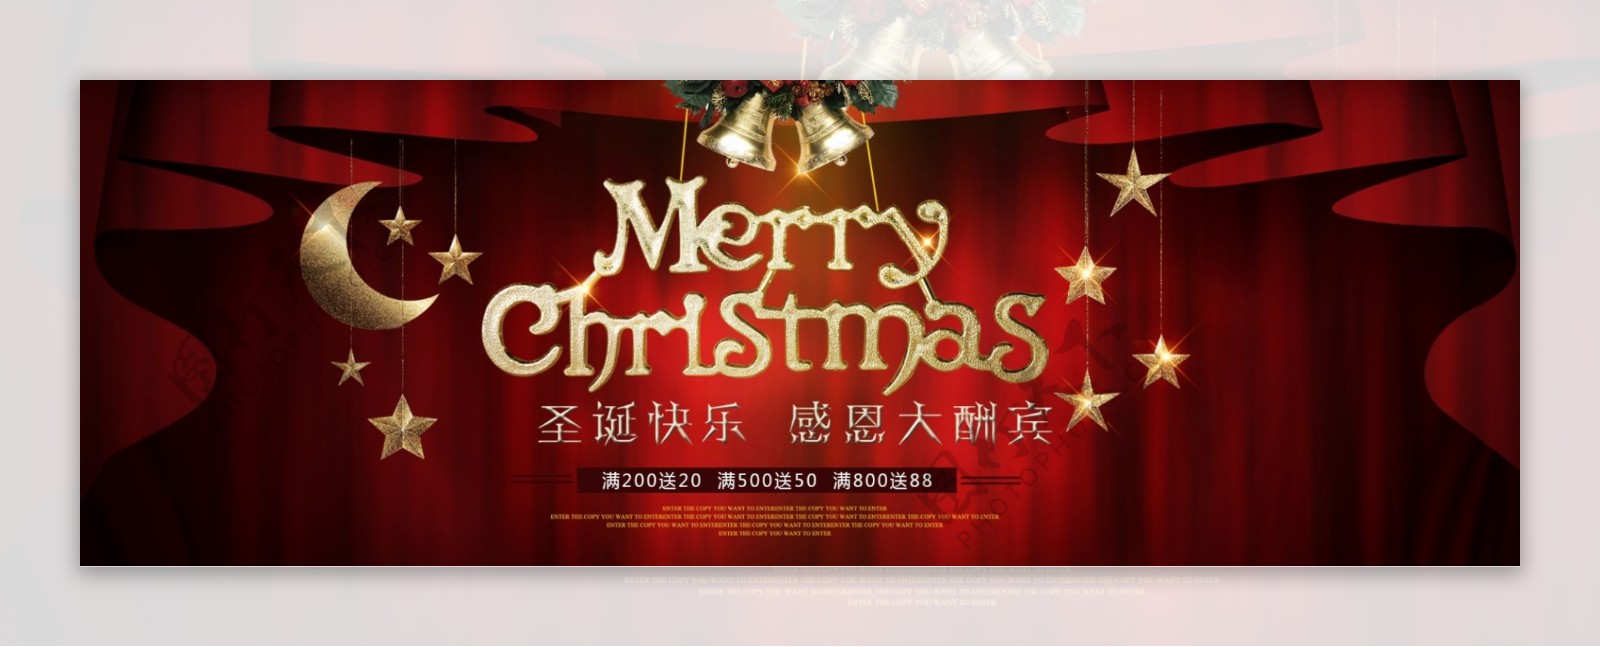 红色幕布星星圣诞快乐天猫电商淘宝圣诞节促销海报